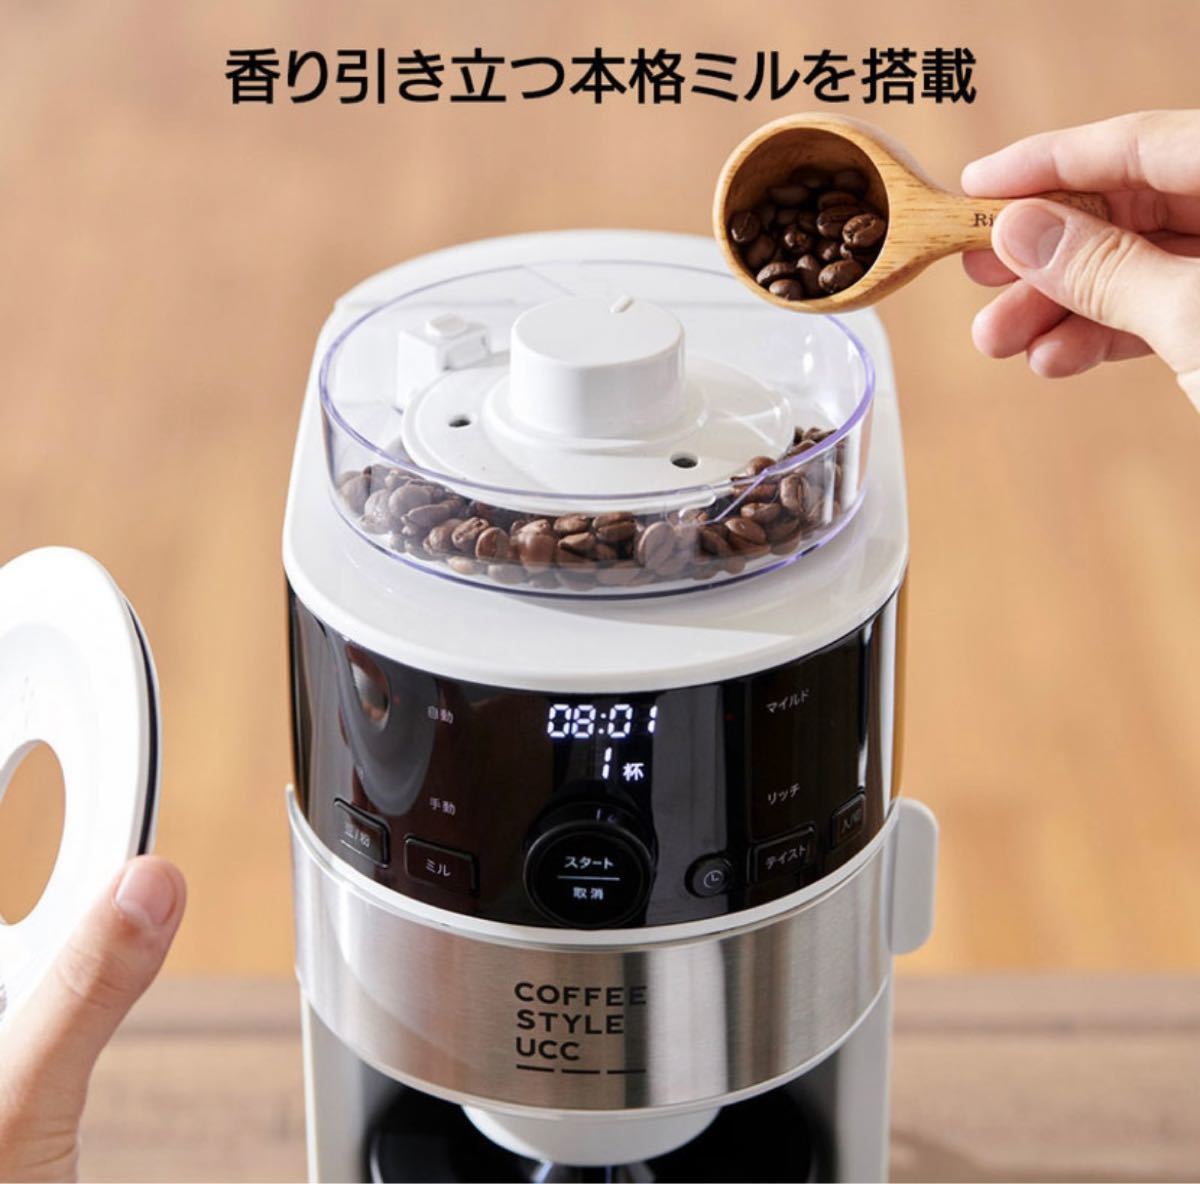 シロカ コーヒーメーカー SC-C124・UCC限定仕様 コーヒー豆 2種付き